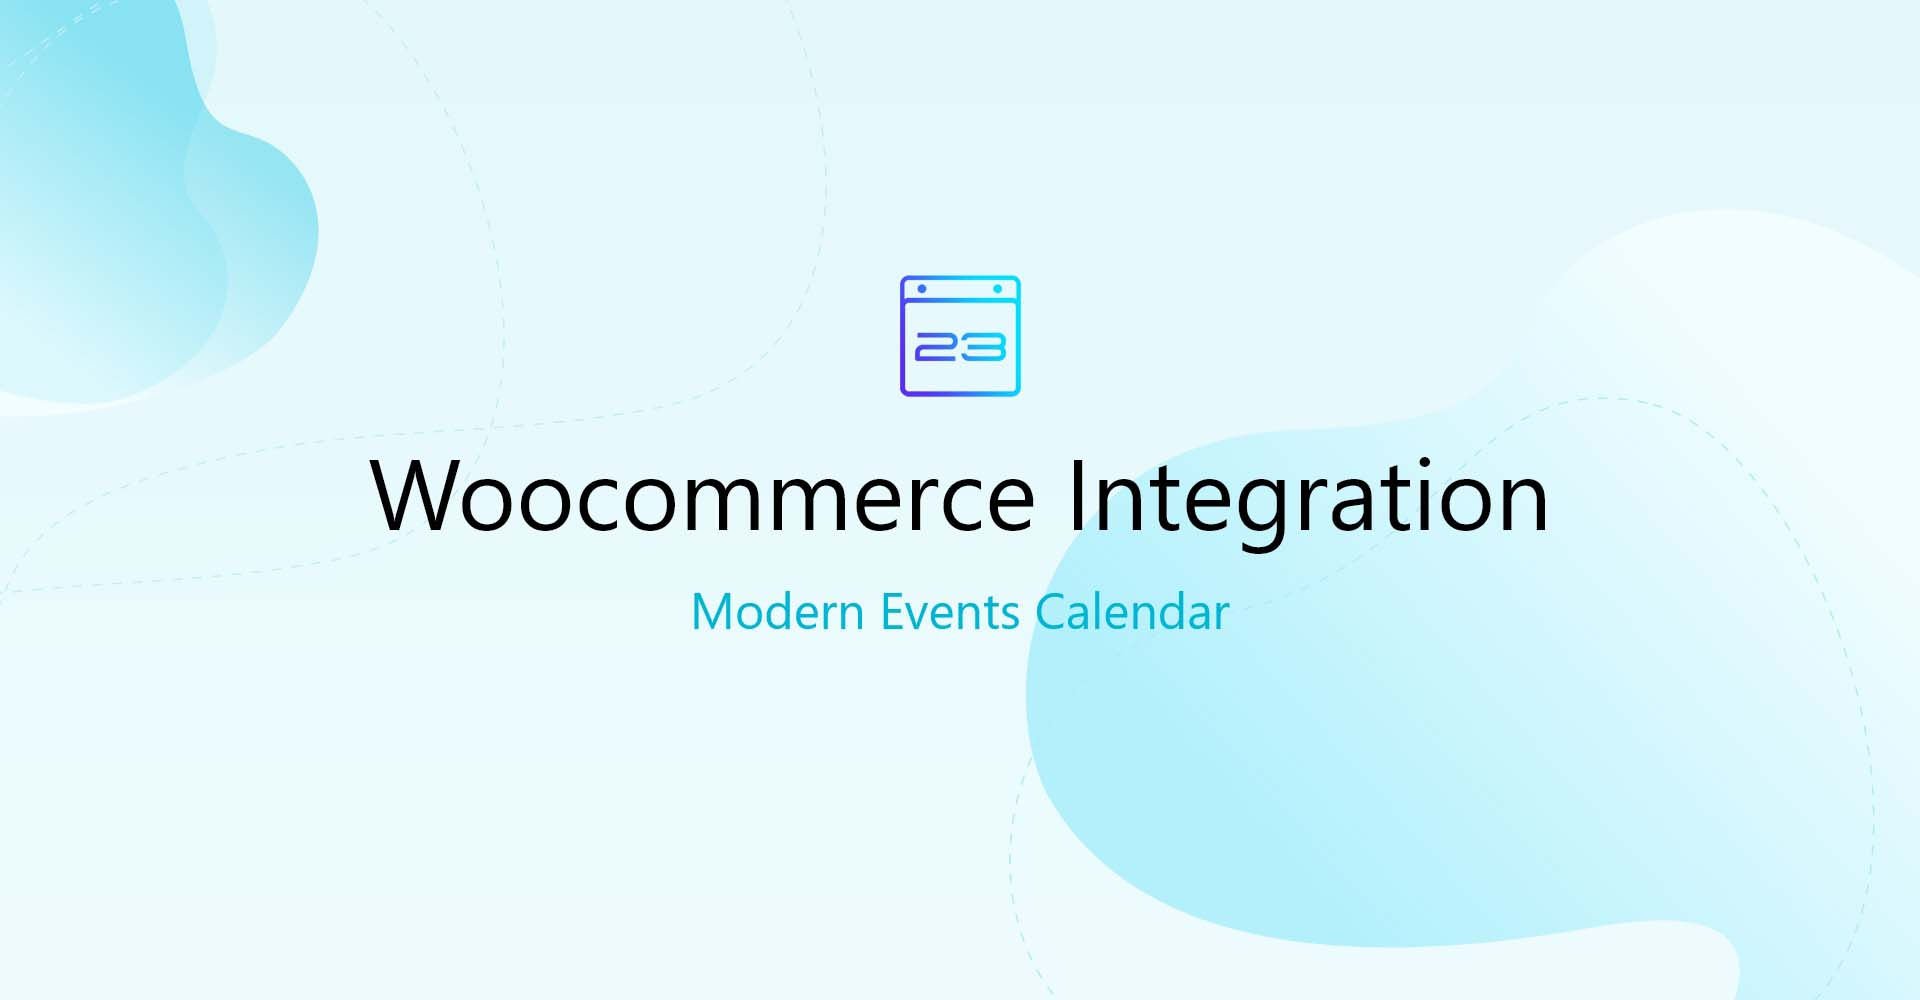 WooCommerce Integration for MEC.jpg